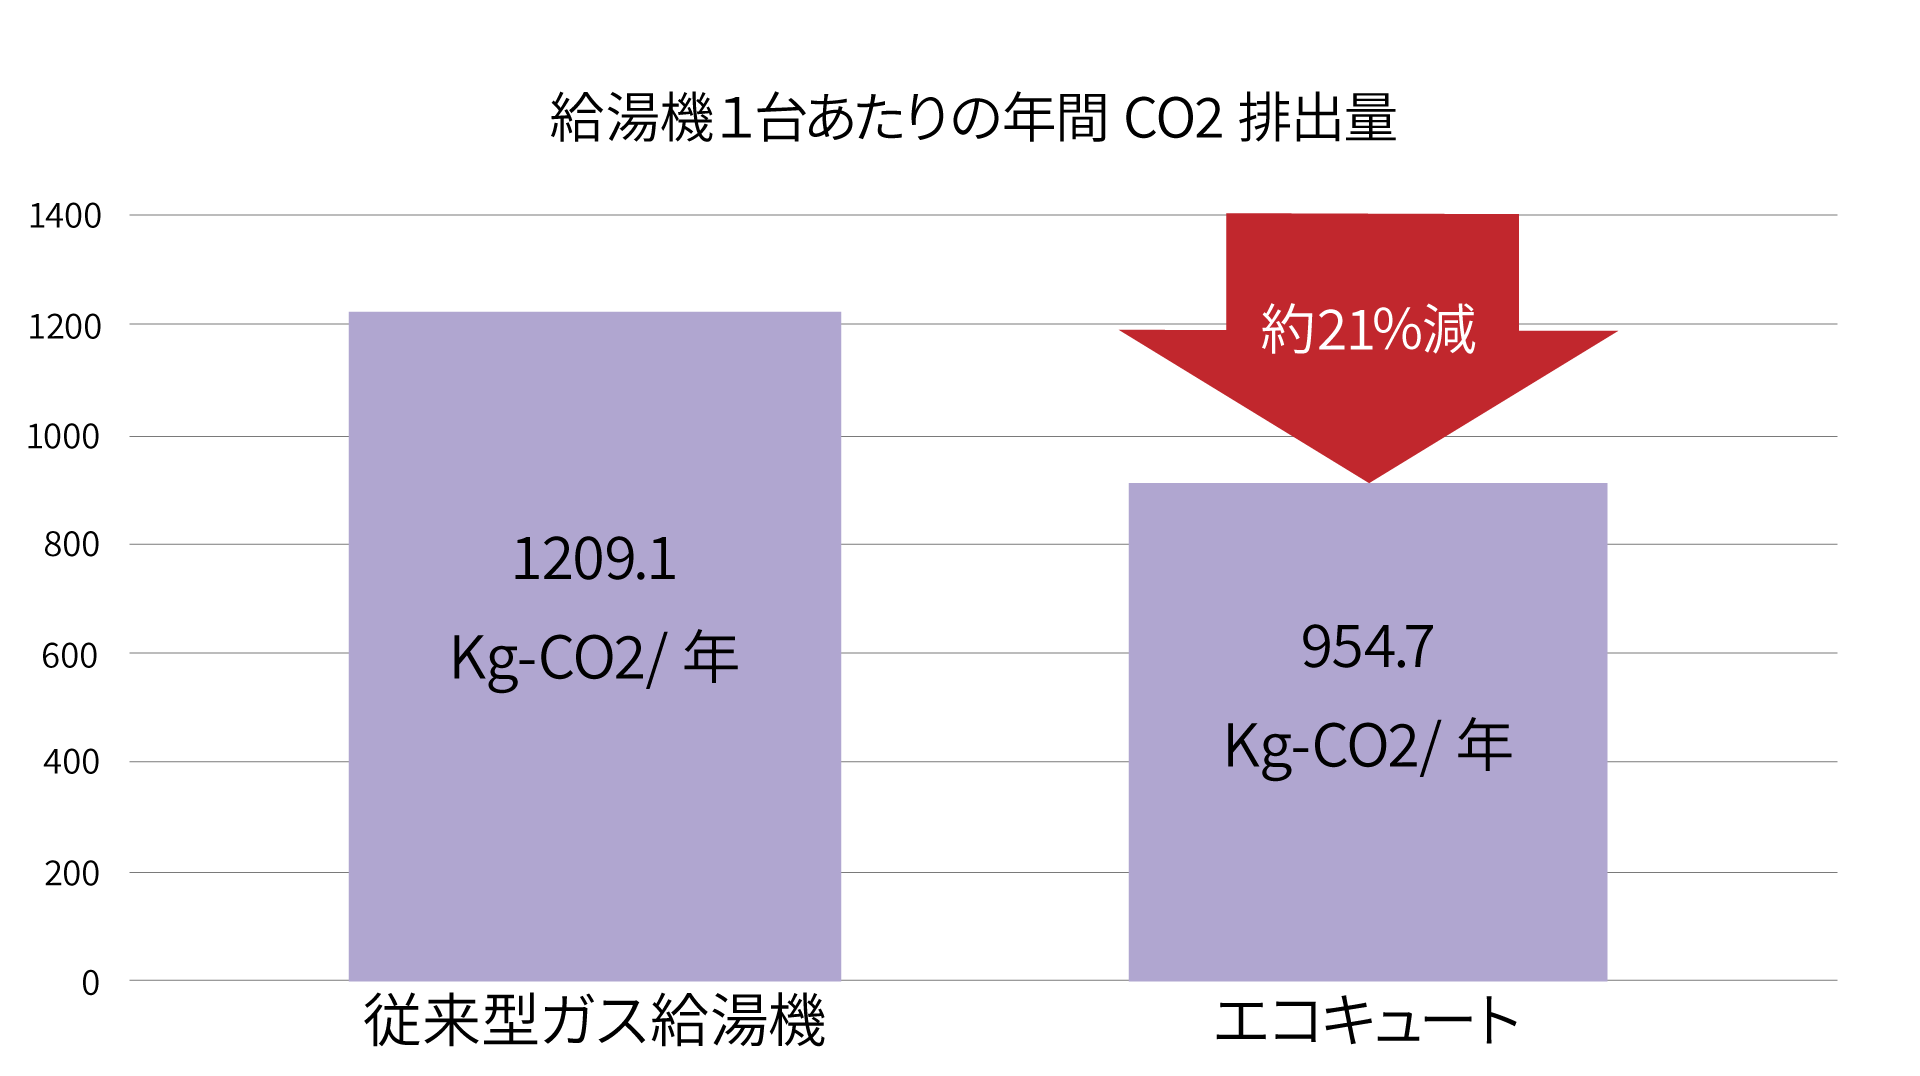 給湯器一台あたりの年間CO2排出量